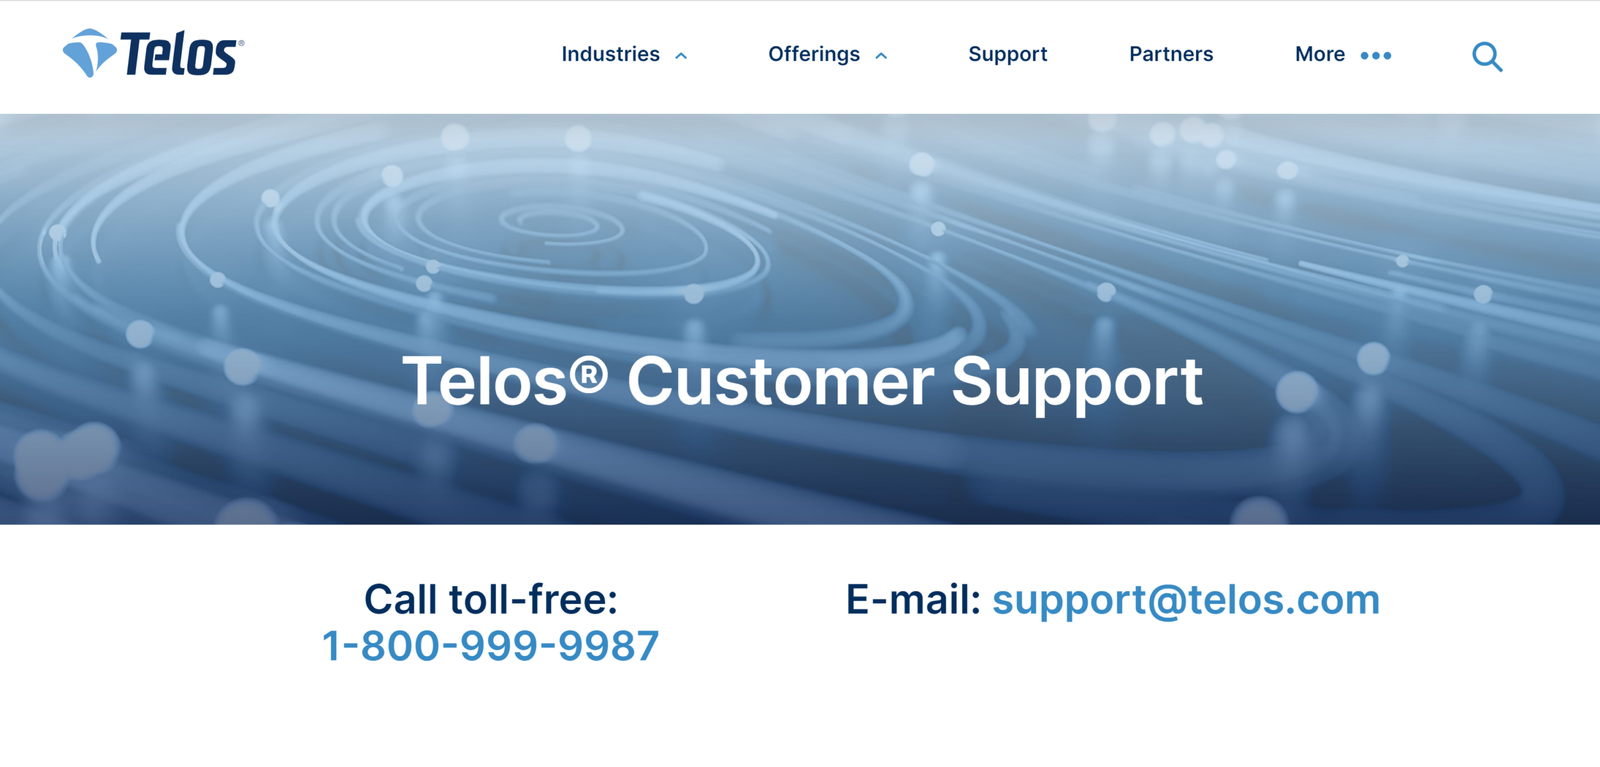 N Telos Login, Bill Payment & Customer Support Information